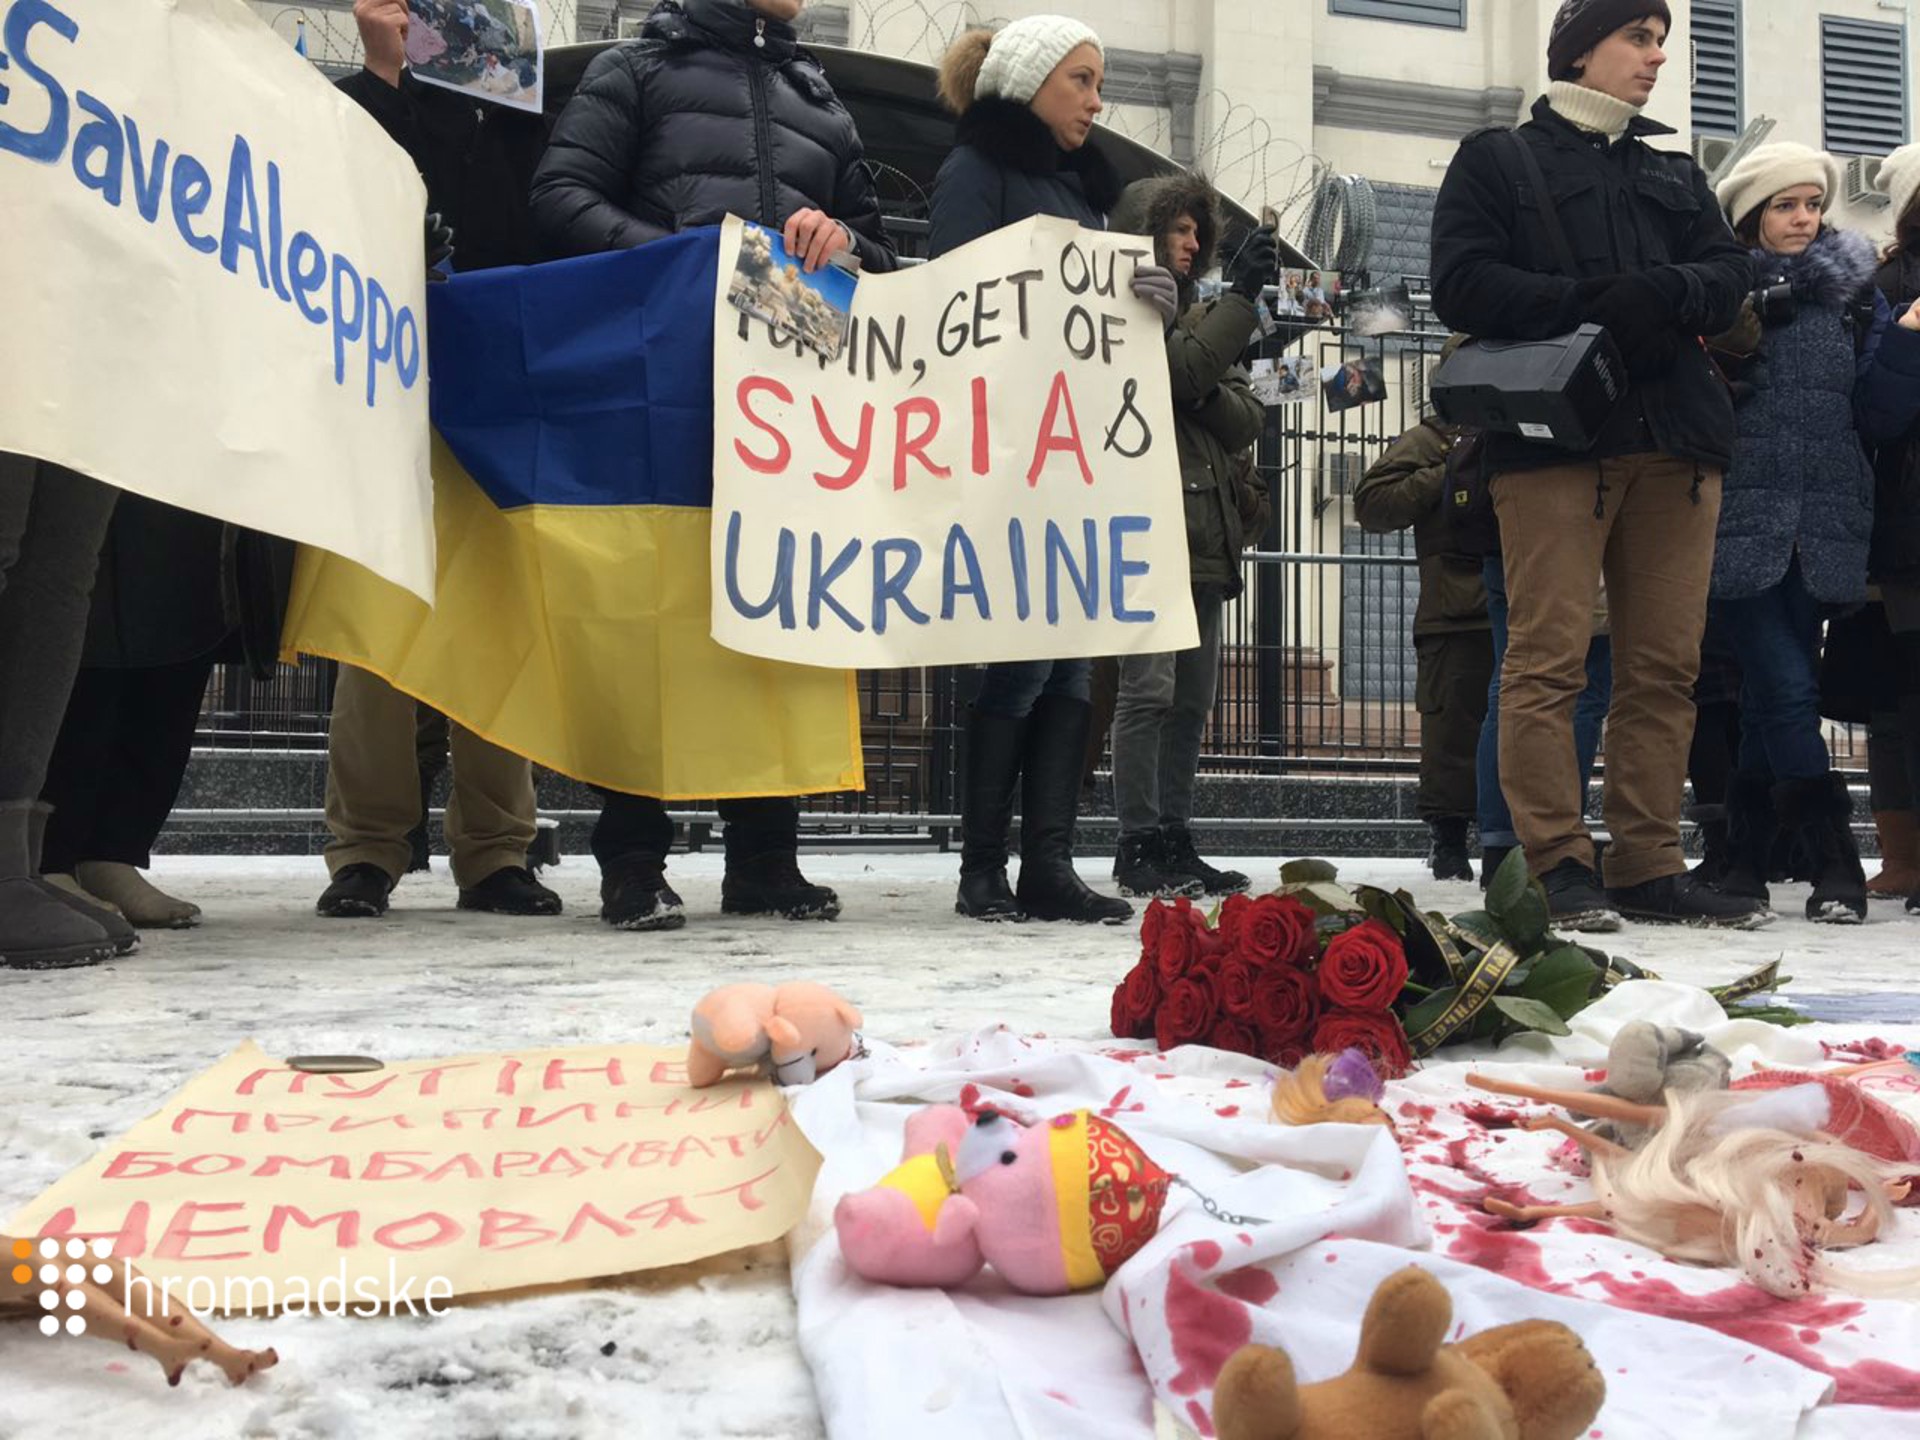 “Путин, прекрати убивать младенцев Сирии!” - в Киеве сотни людей пикетируют посольство РФ